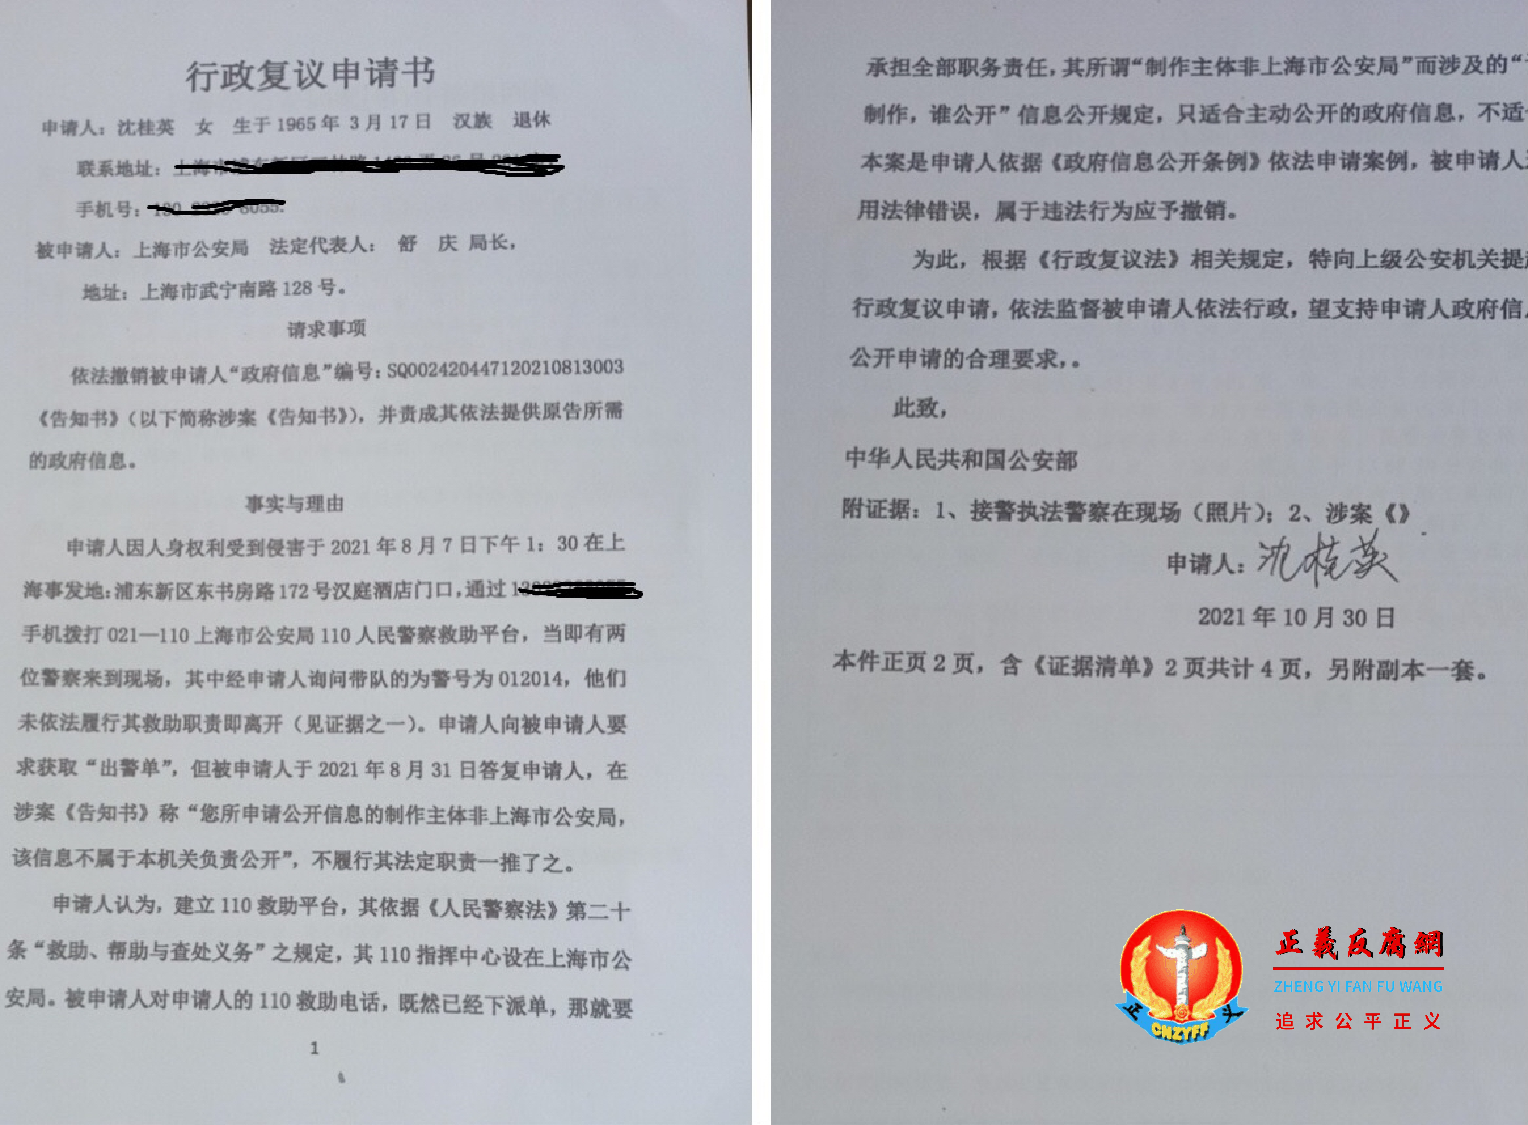 10月30日沈桂英和宋嘉鸿一起拟写的行政复议申请书。.png